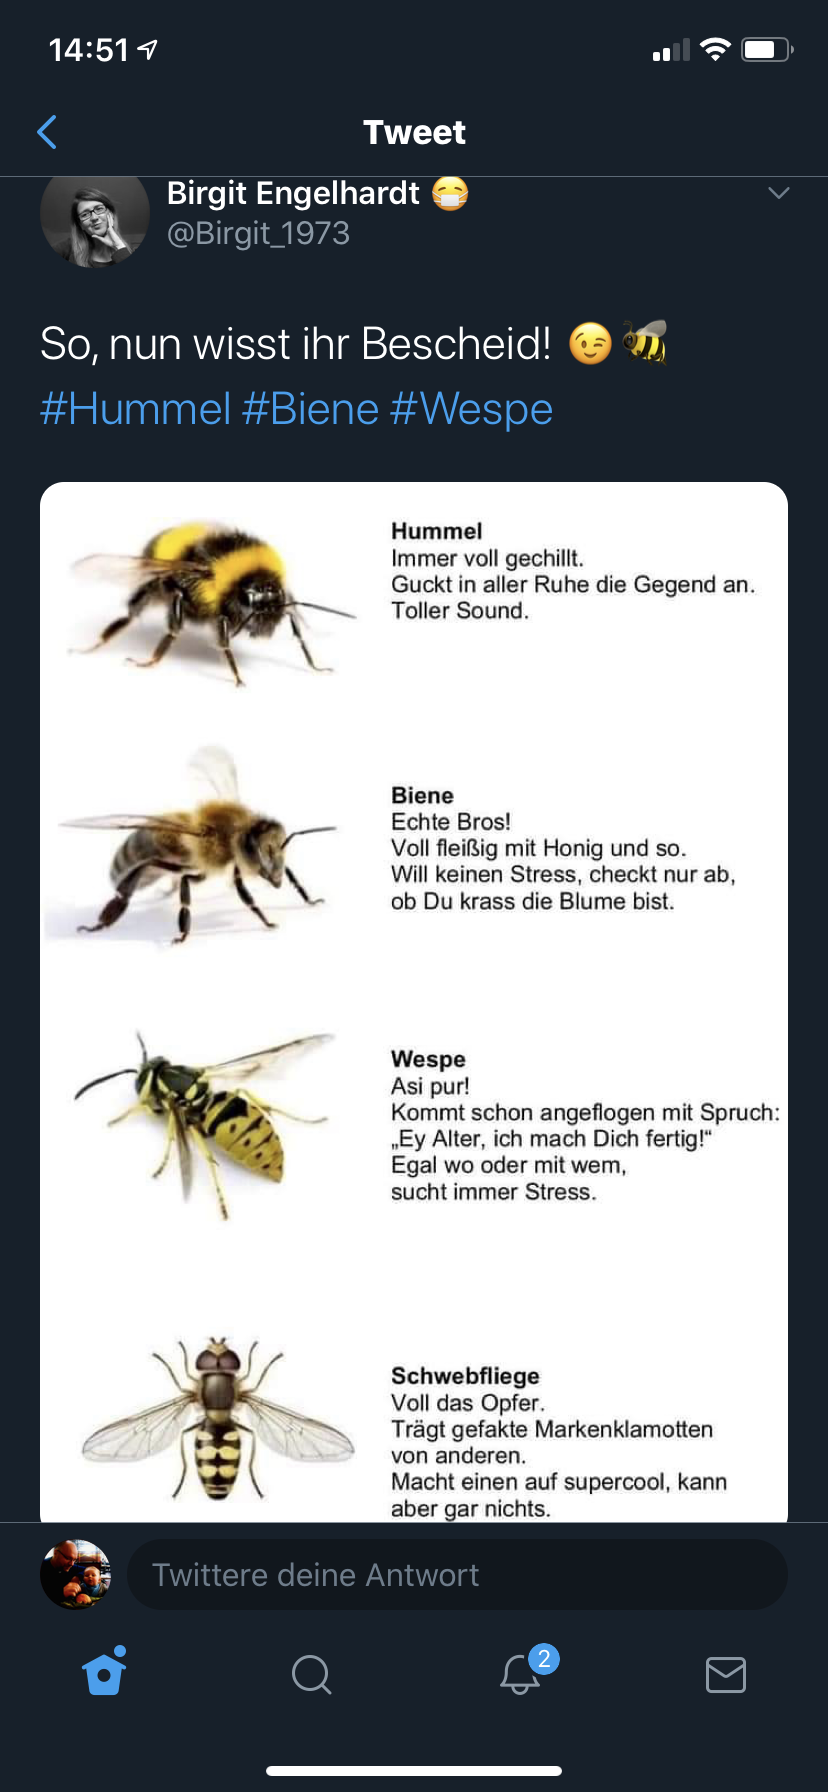 über Hummeln, Bienen, Wespen und Schwebfliegen - ganz einfach erklärt.